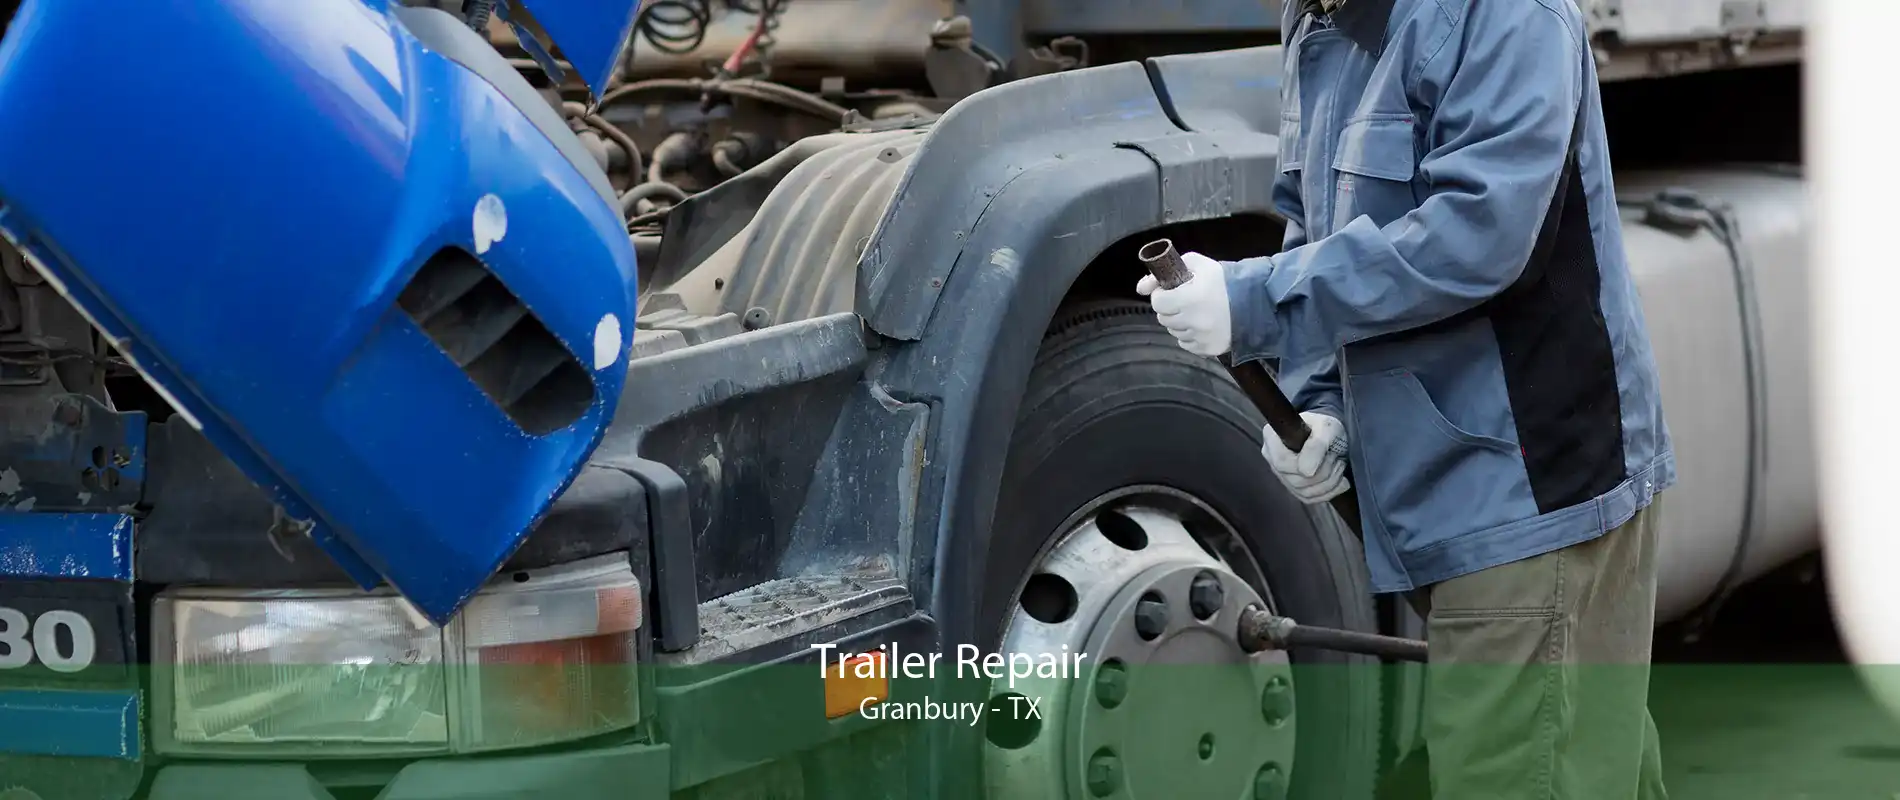 Trailer Repair Granbury - TX